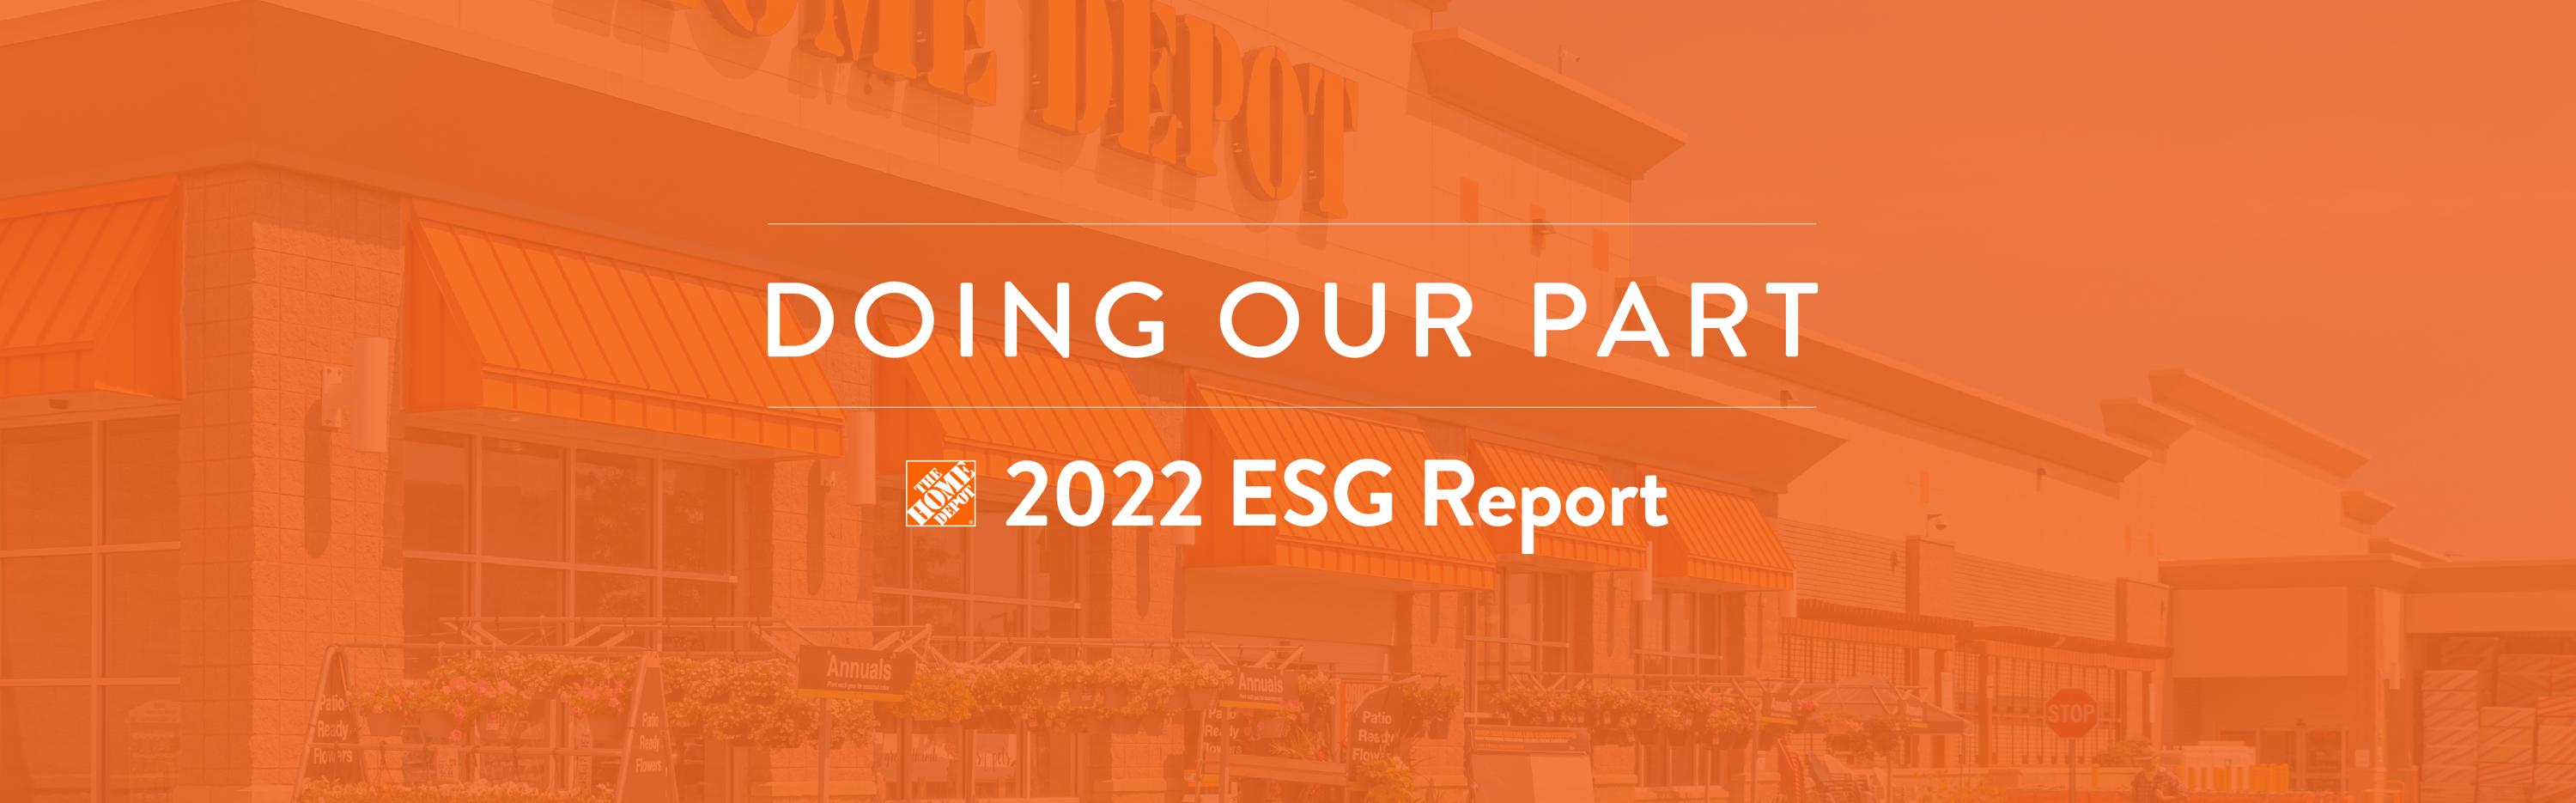 The Home Depot 2022 ESG Report